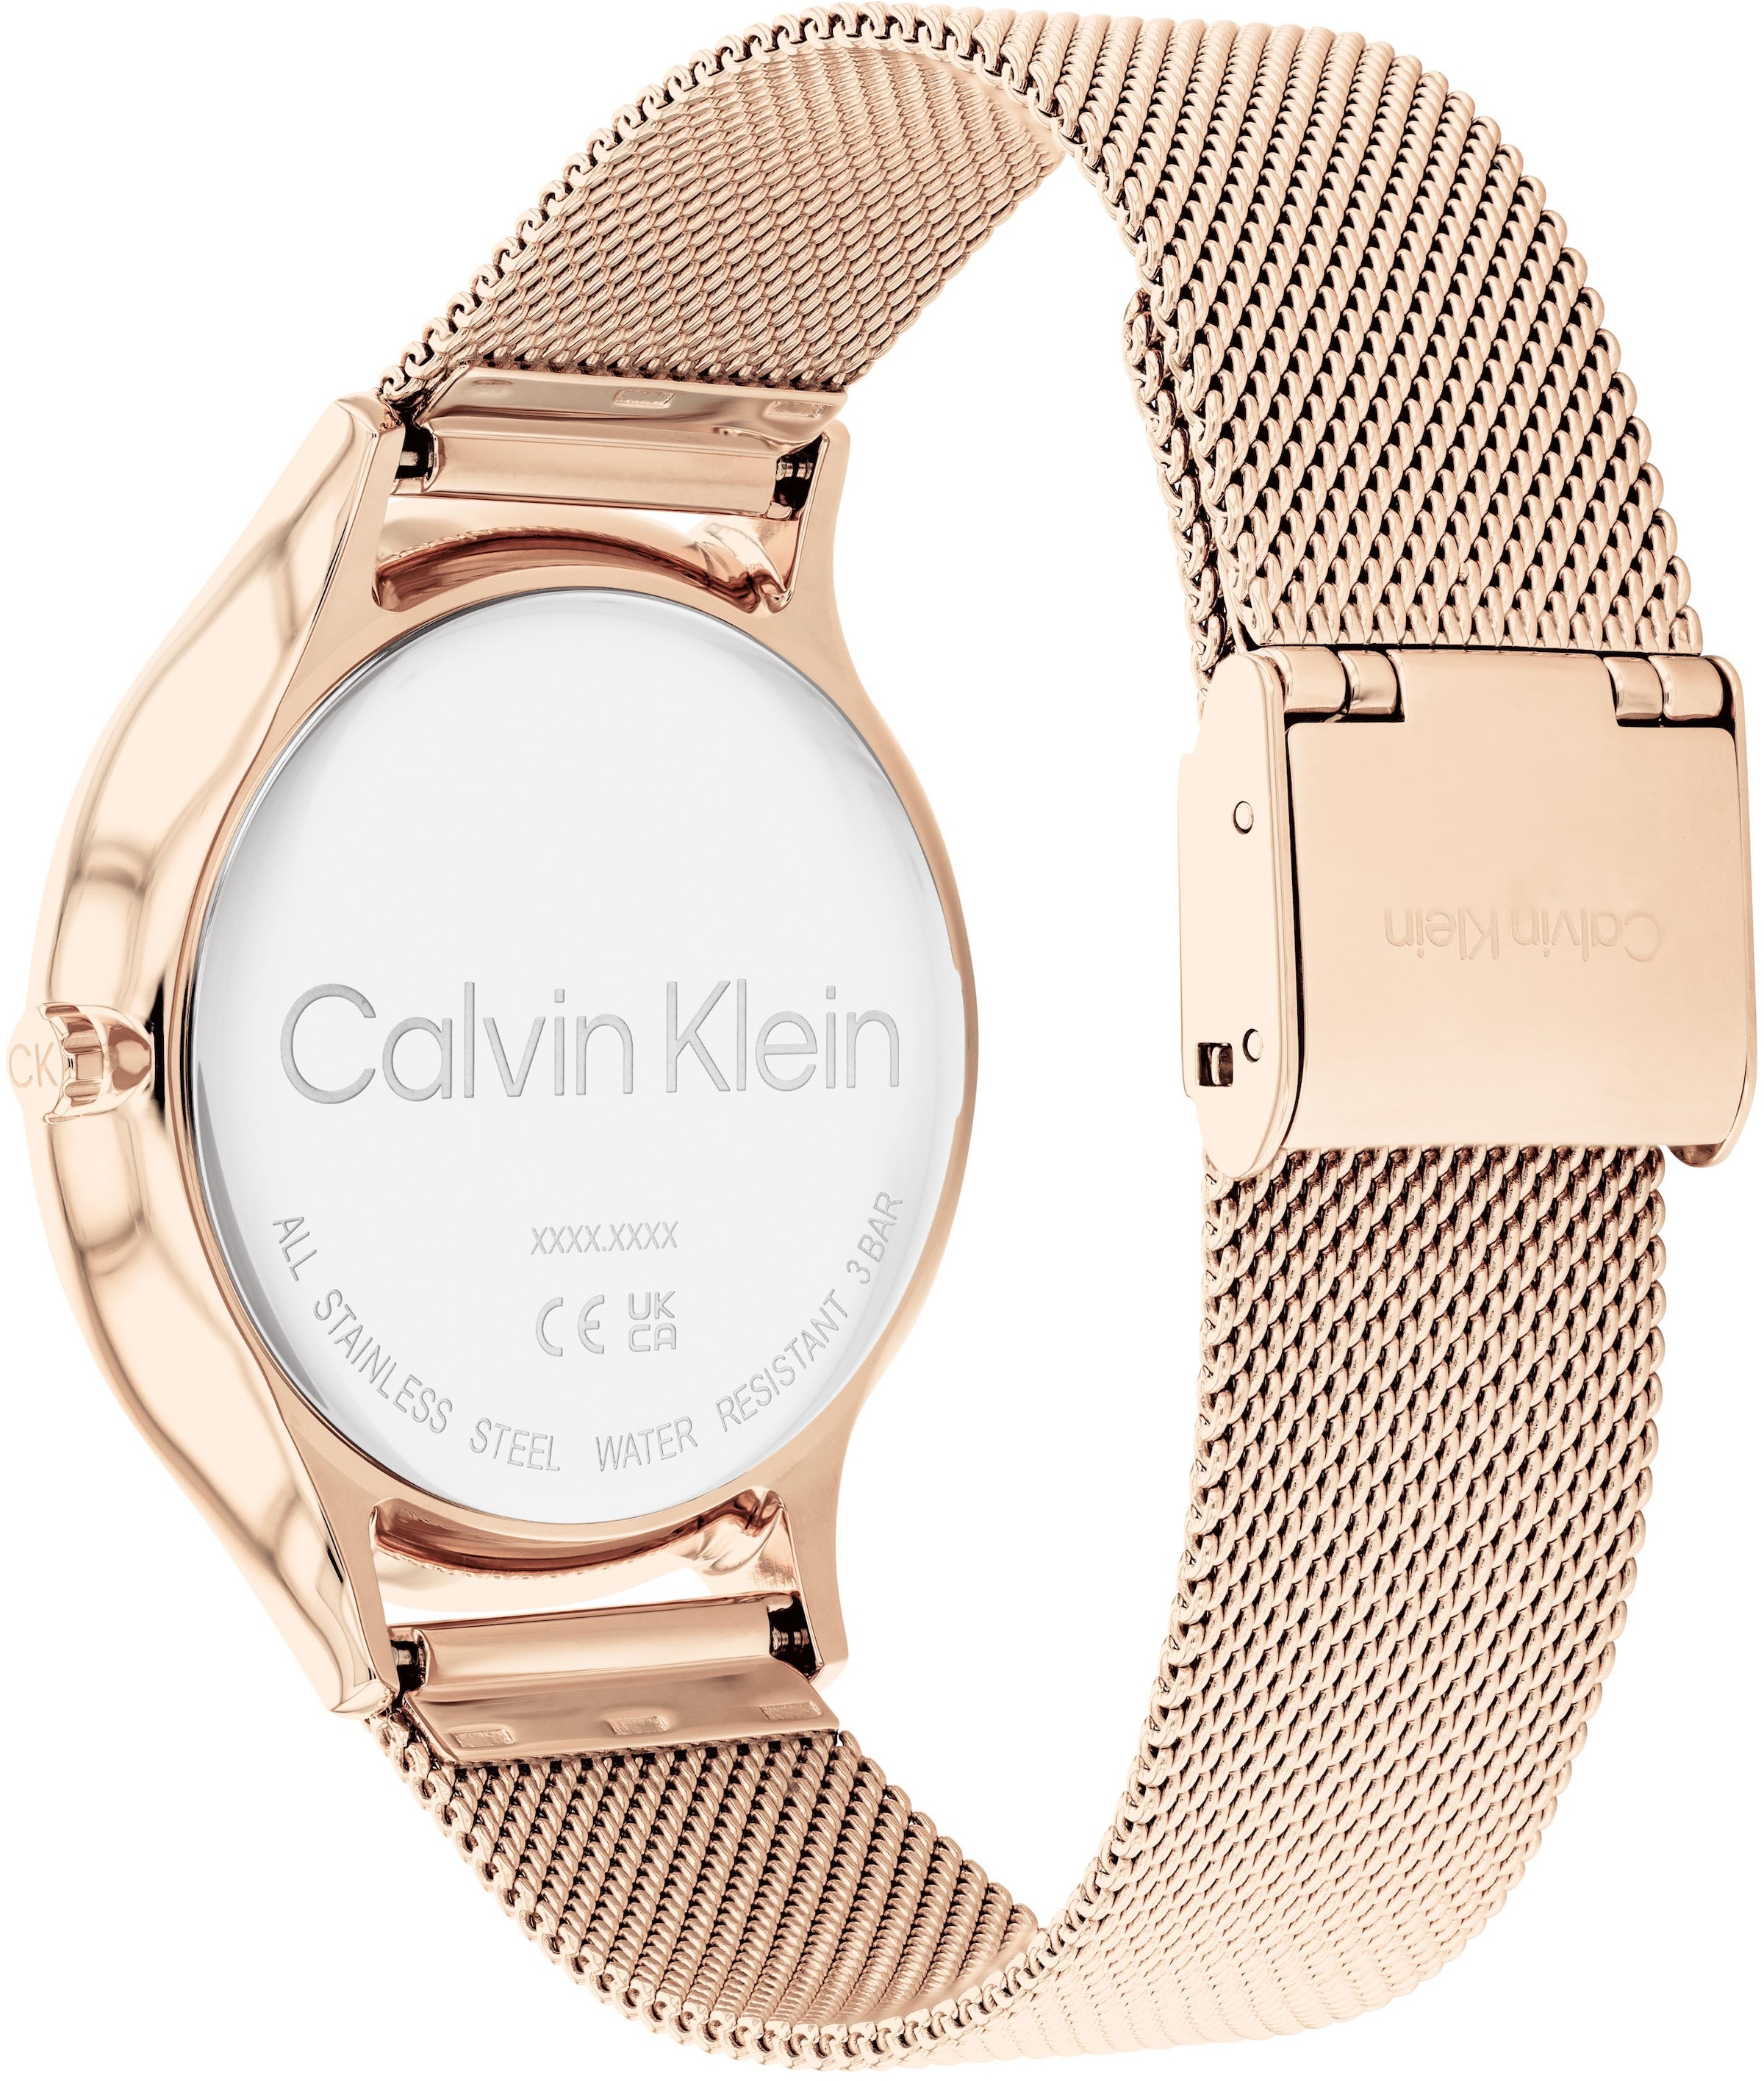 Calvin Klein Quarzuhr »Timeless 2H, 25200002«, Armbanduhr, Damenuhr, Mineralglas, IP-Beschichtung